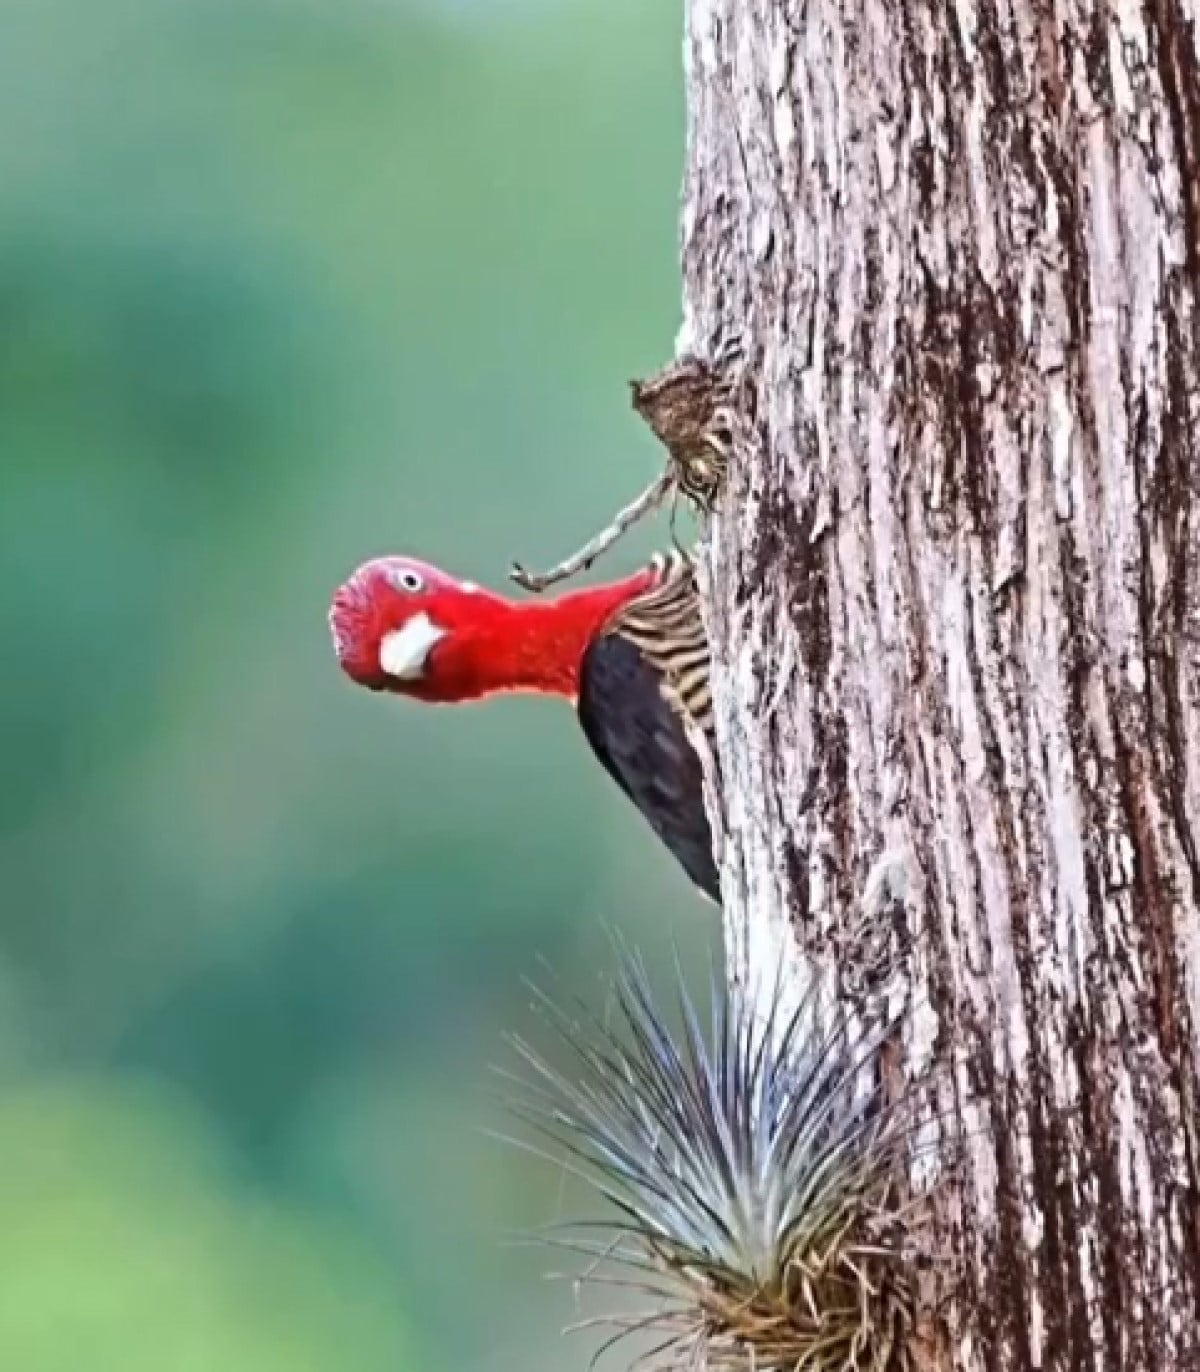 O pica-pau é uma ave facilmente identificável por seus hábitos e morfologia específicos, especialmente pelo hábito de tamborilar (bater o bico sobre uma superfície).